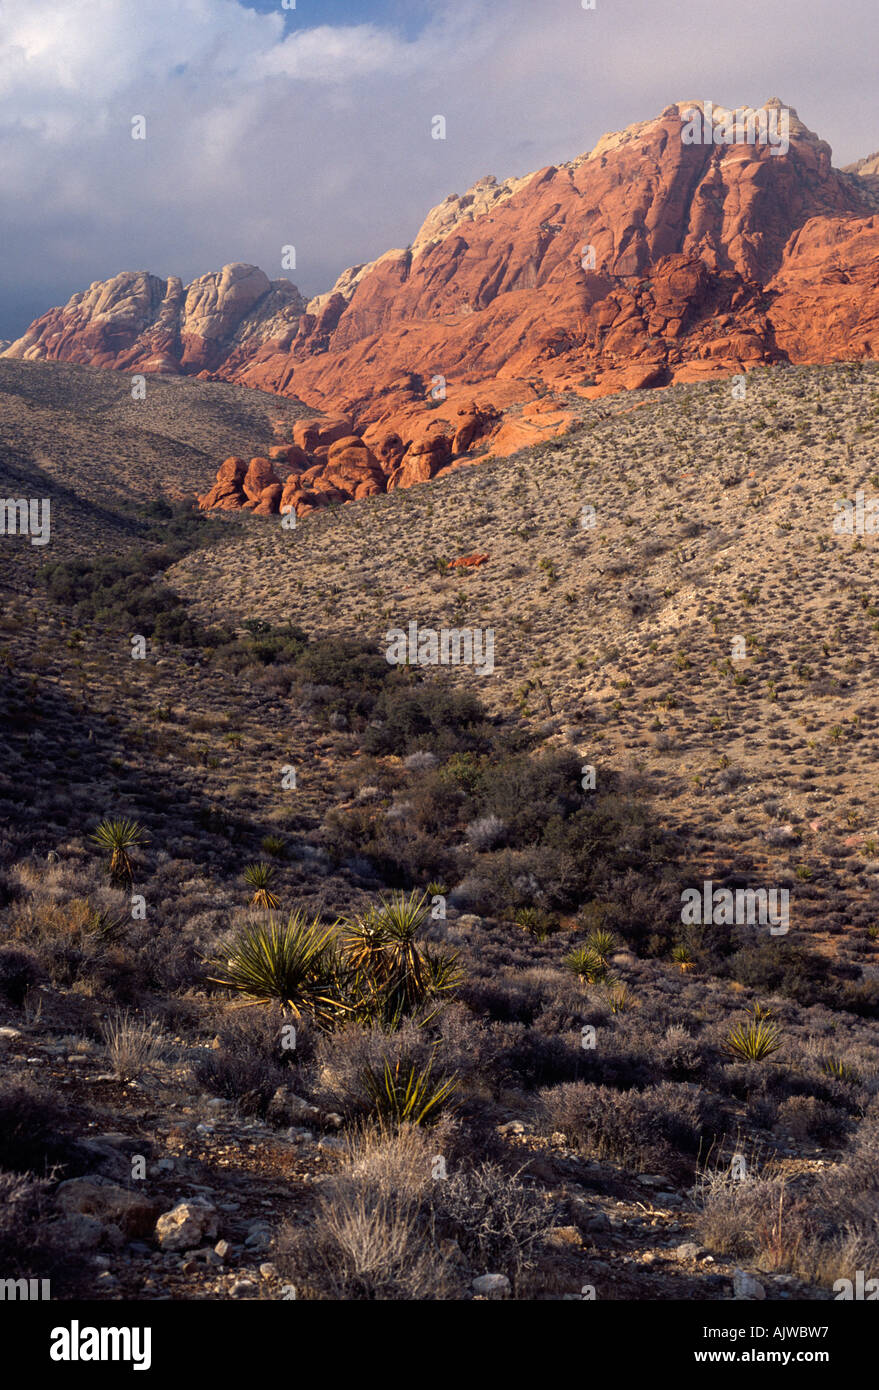 Deserto Mojave orrido con pietra arenaria rossa e grigia formazioni calcaree, il Red Rock Canyon National Conservation Area, Nevada Foto Stock